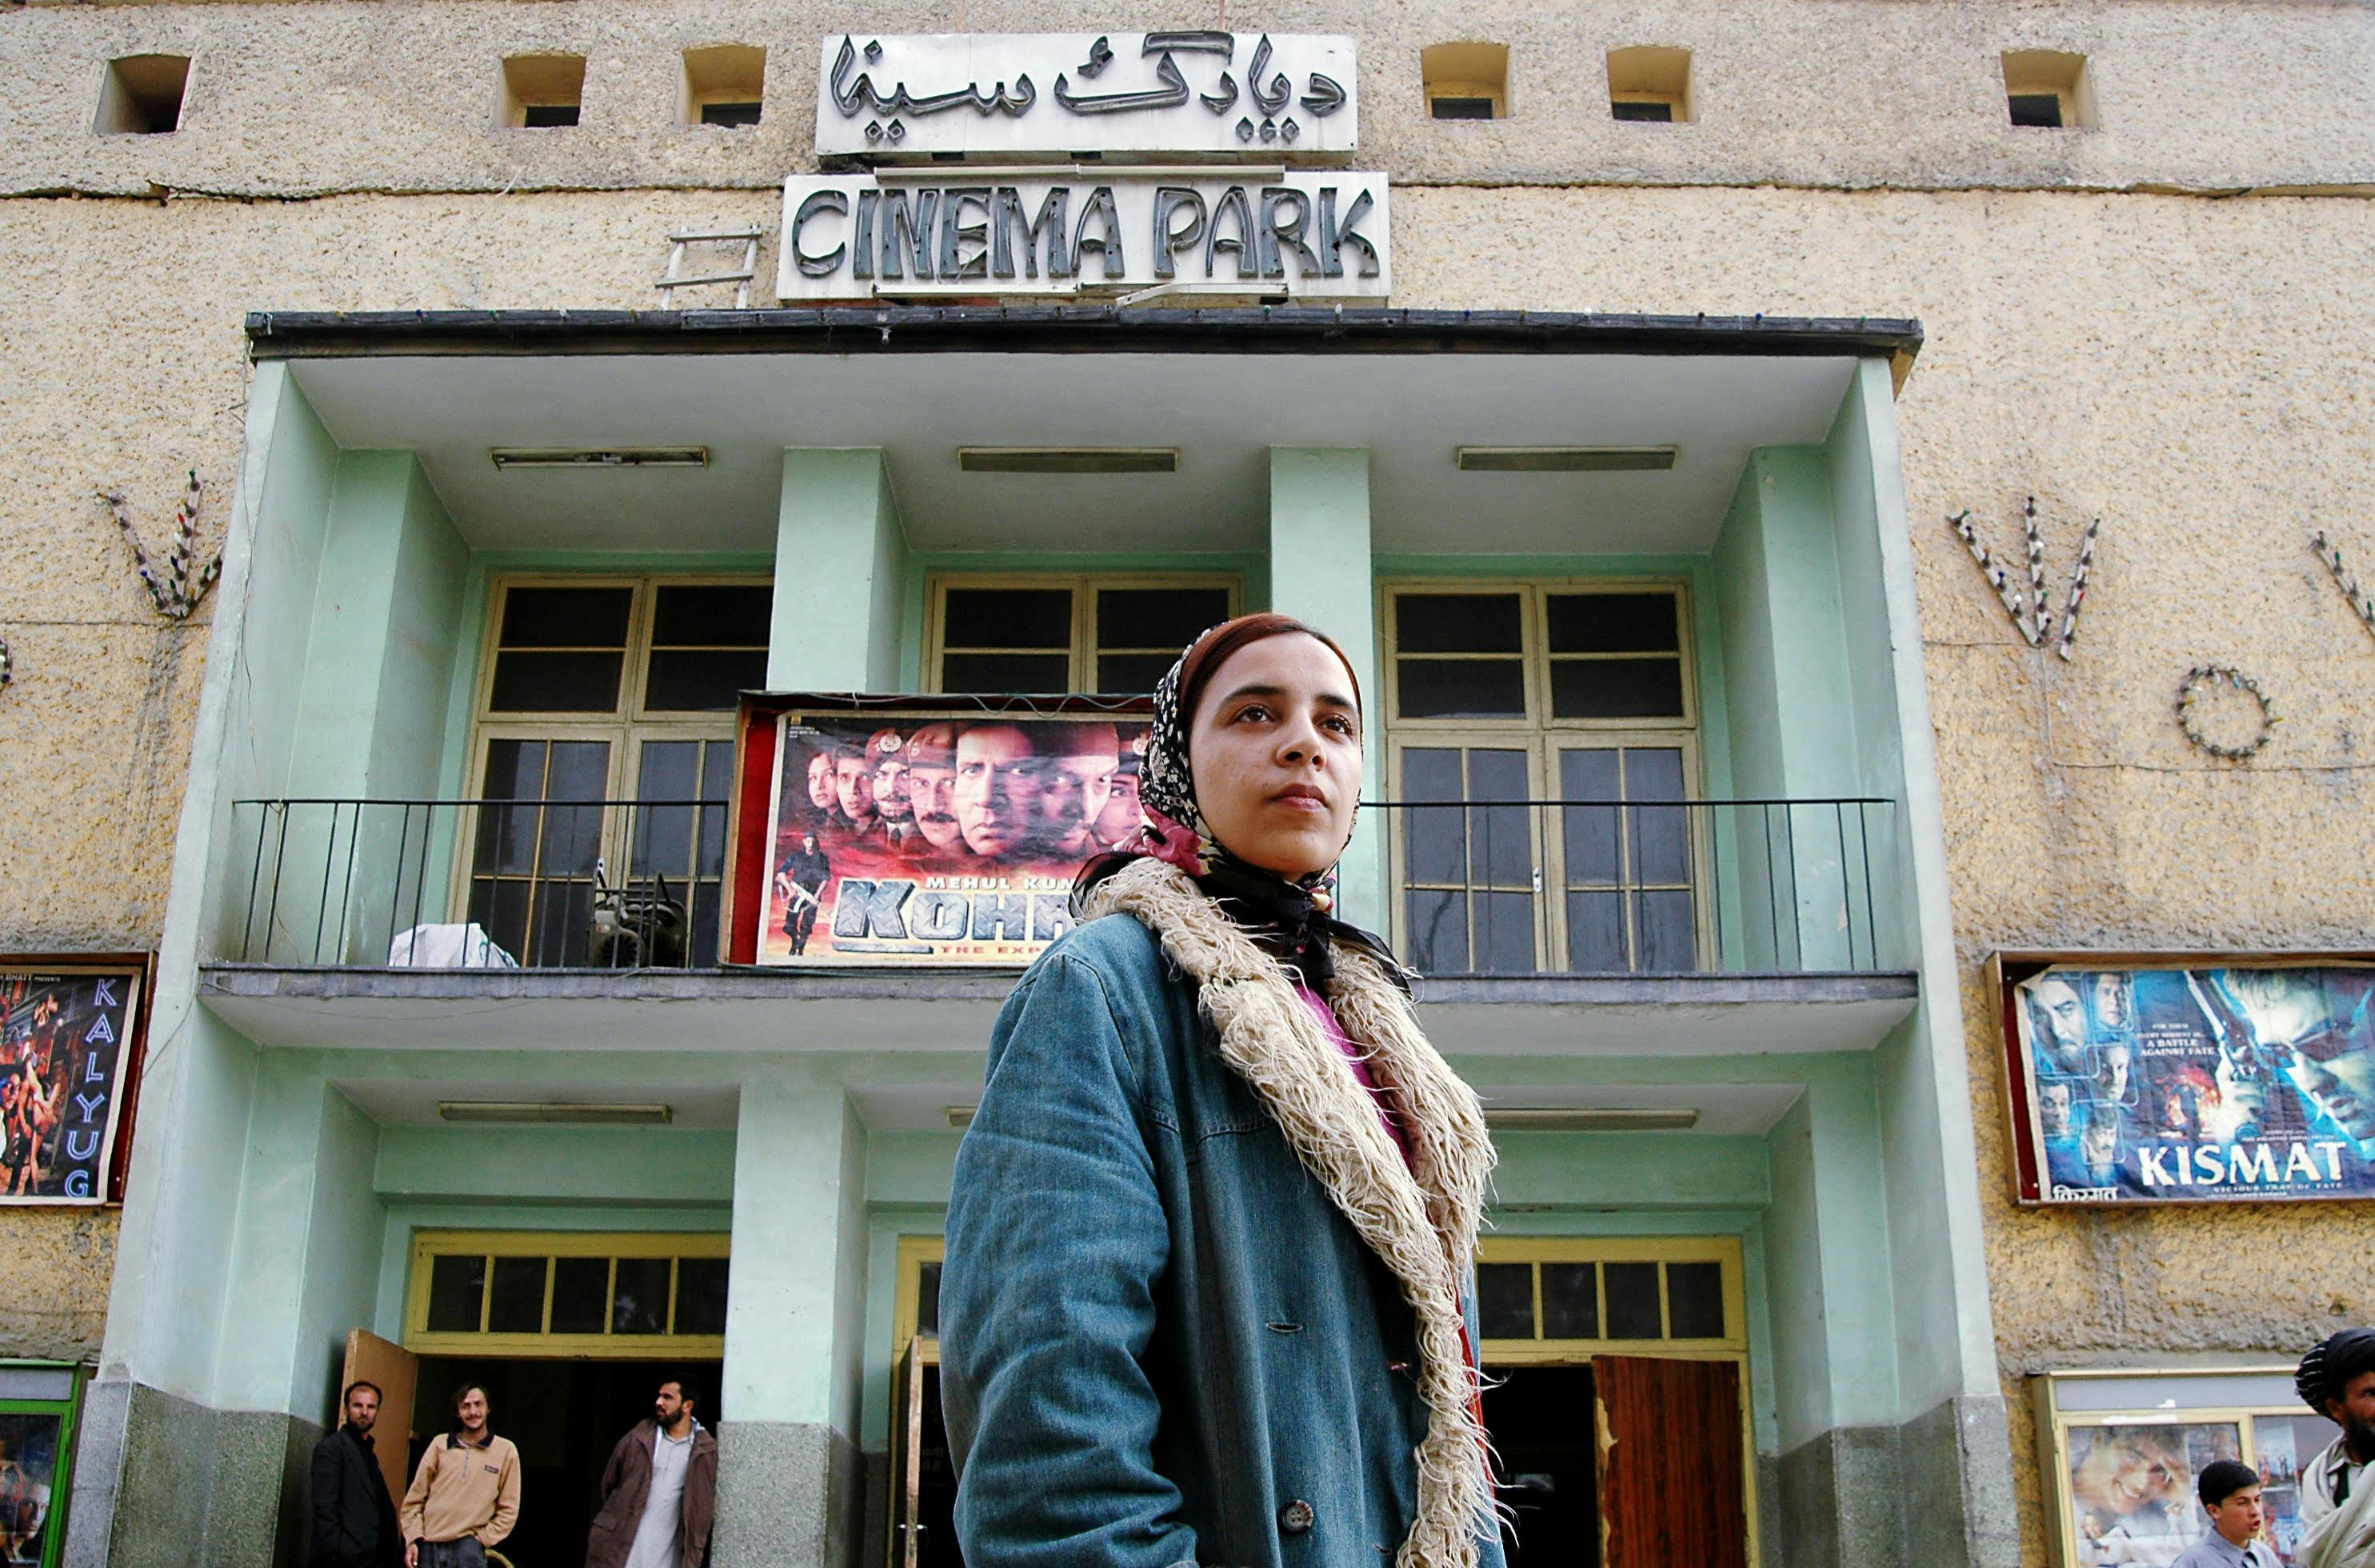 Afghan filmmaker Roya Sadaat at Cinema Park, 2006 (Annette Kjaer)